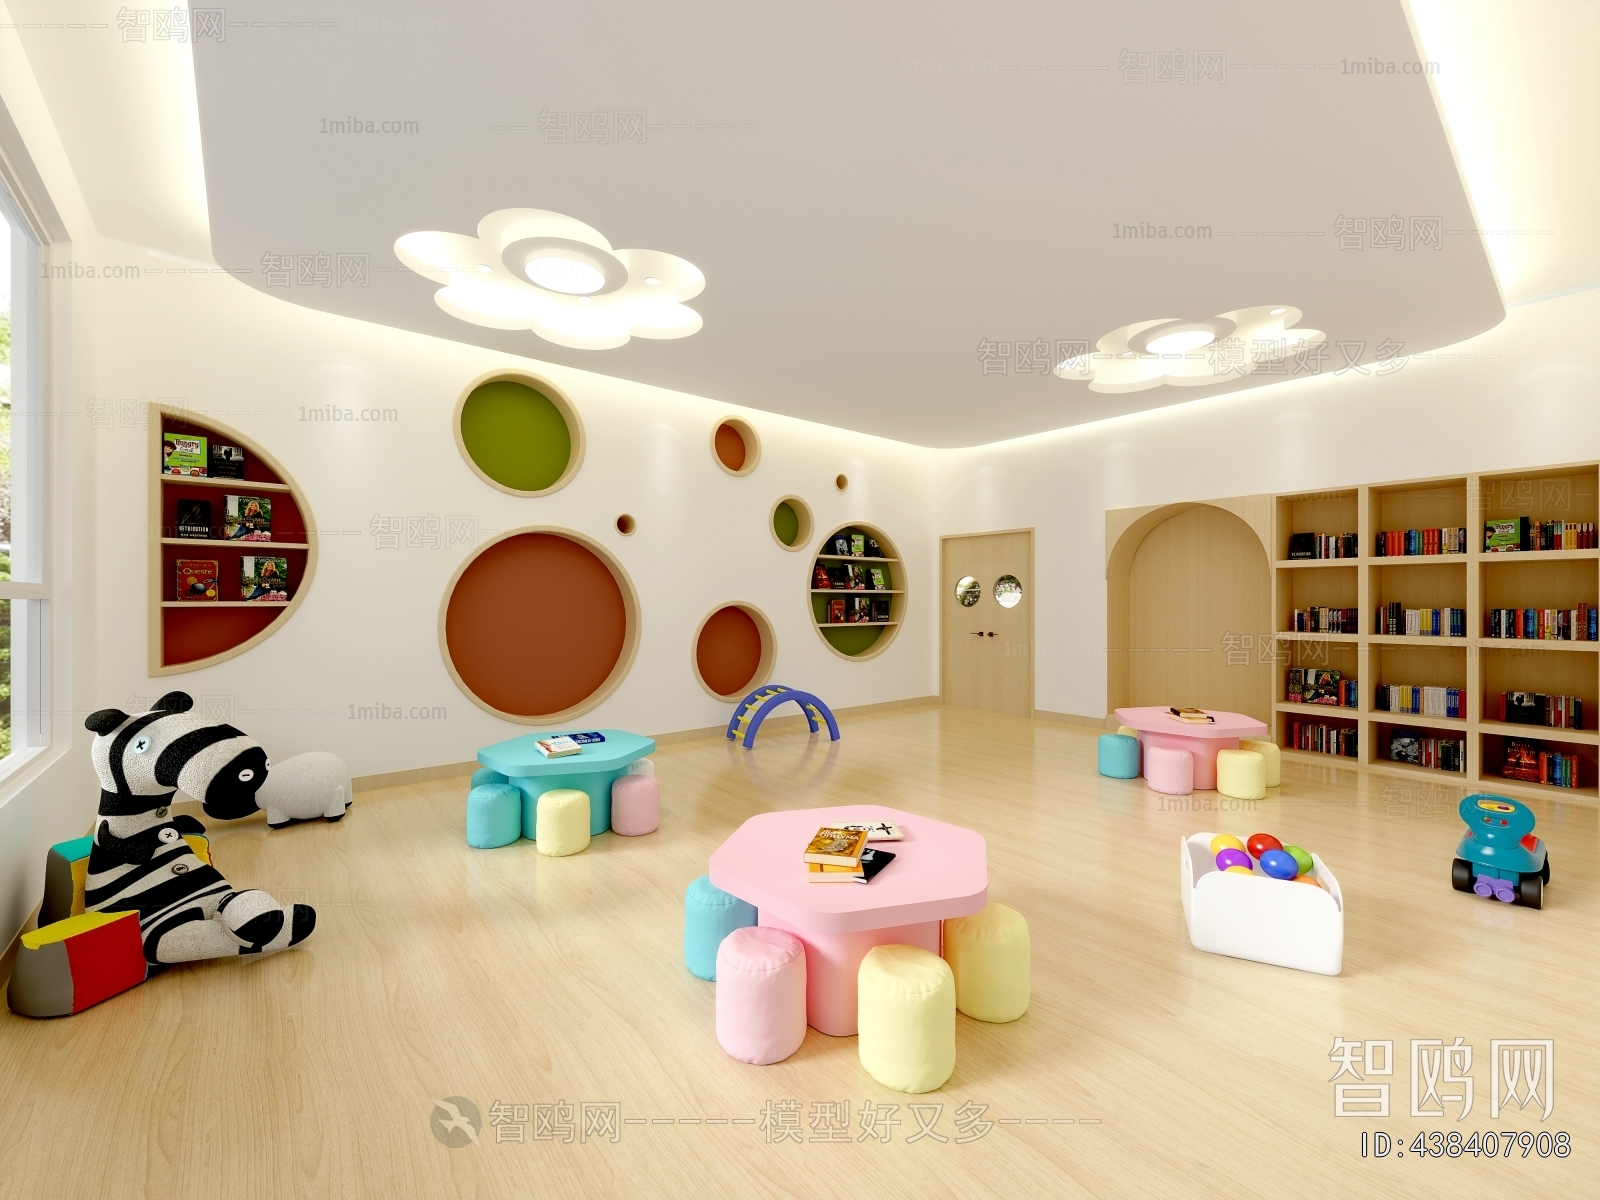 现代儿童阅览室